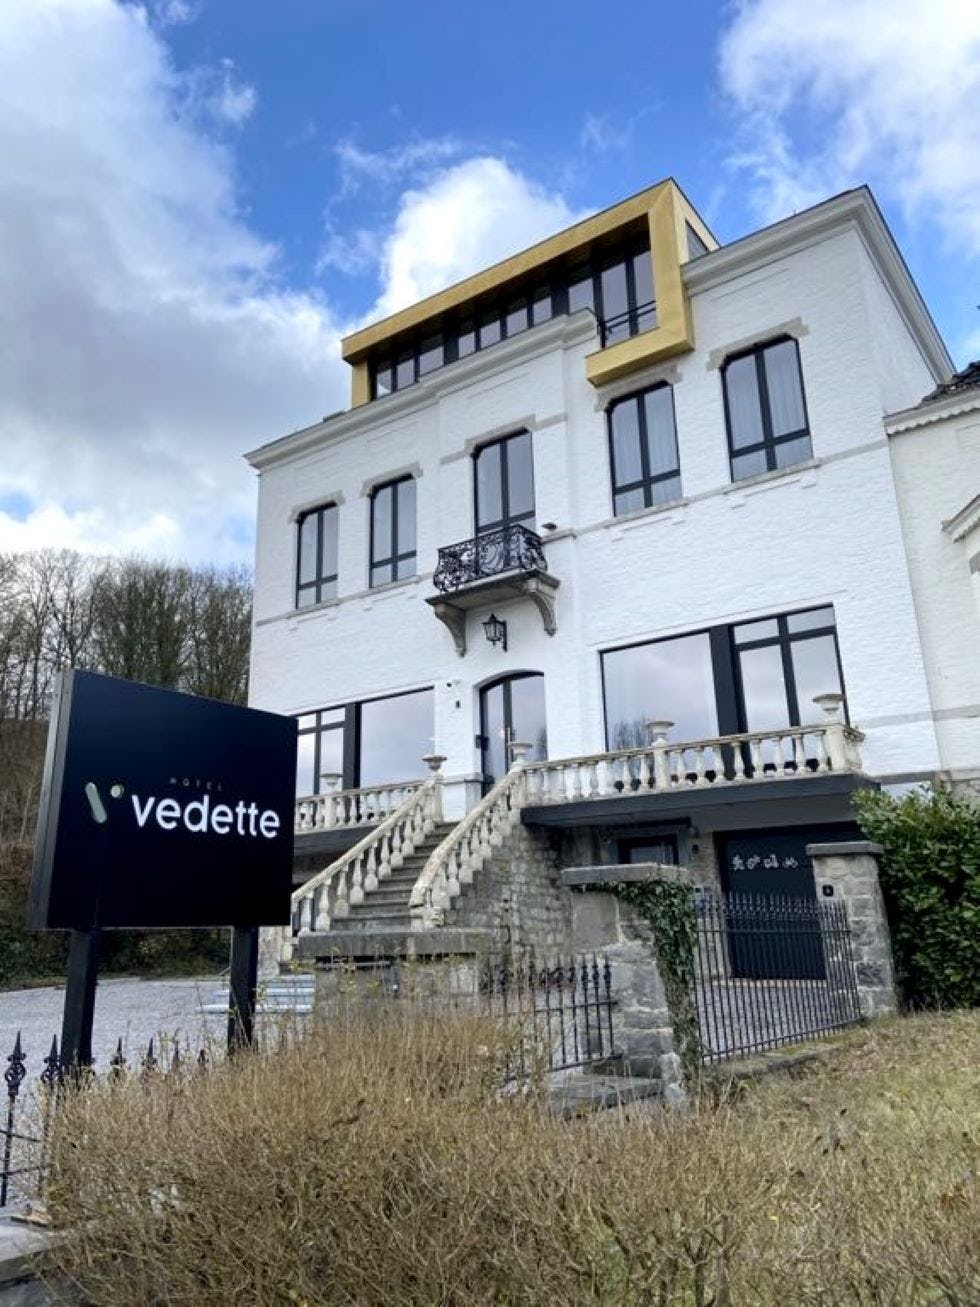 Hôtel Vedette